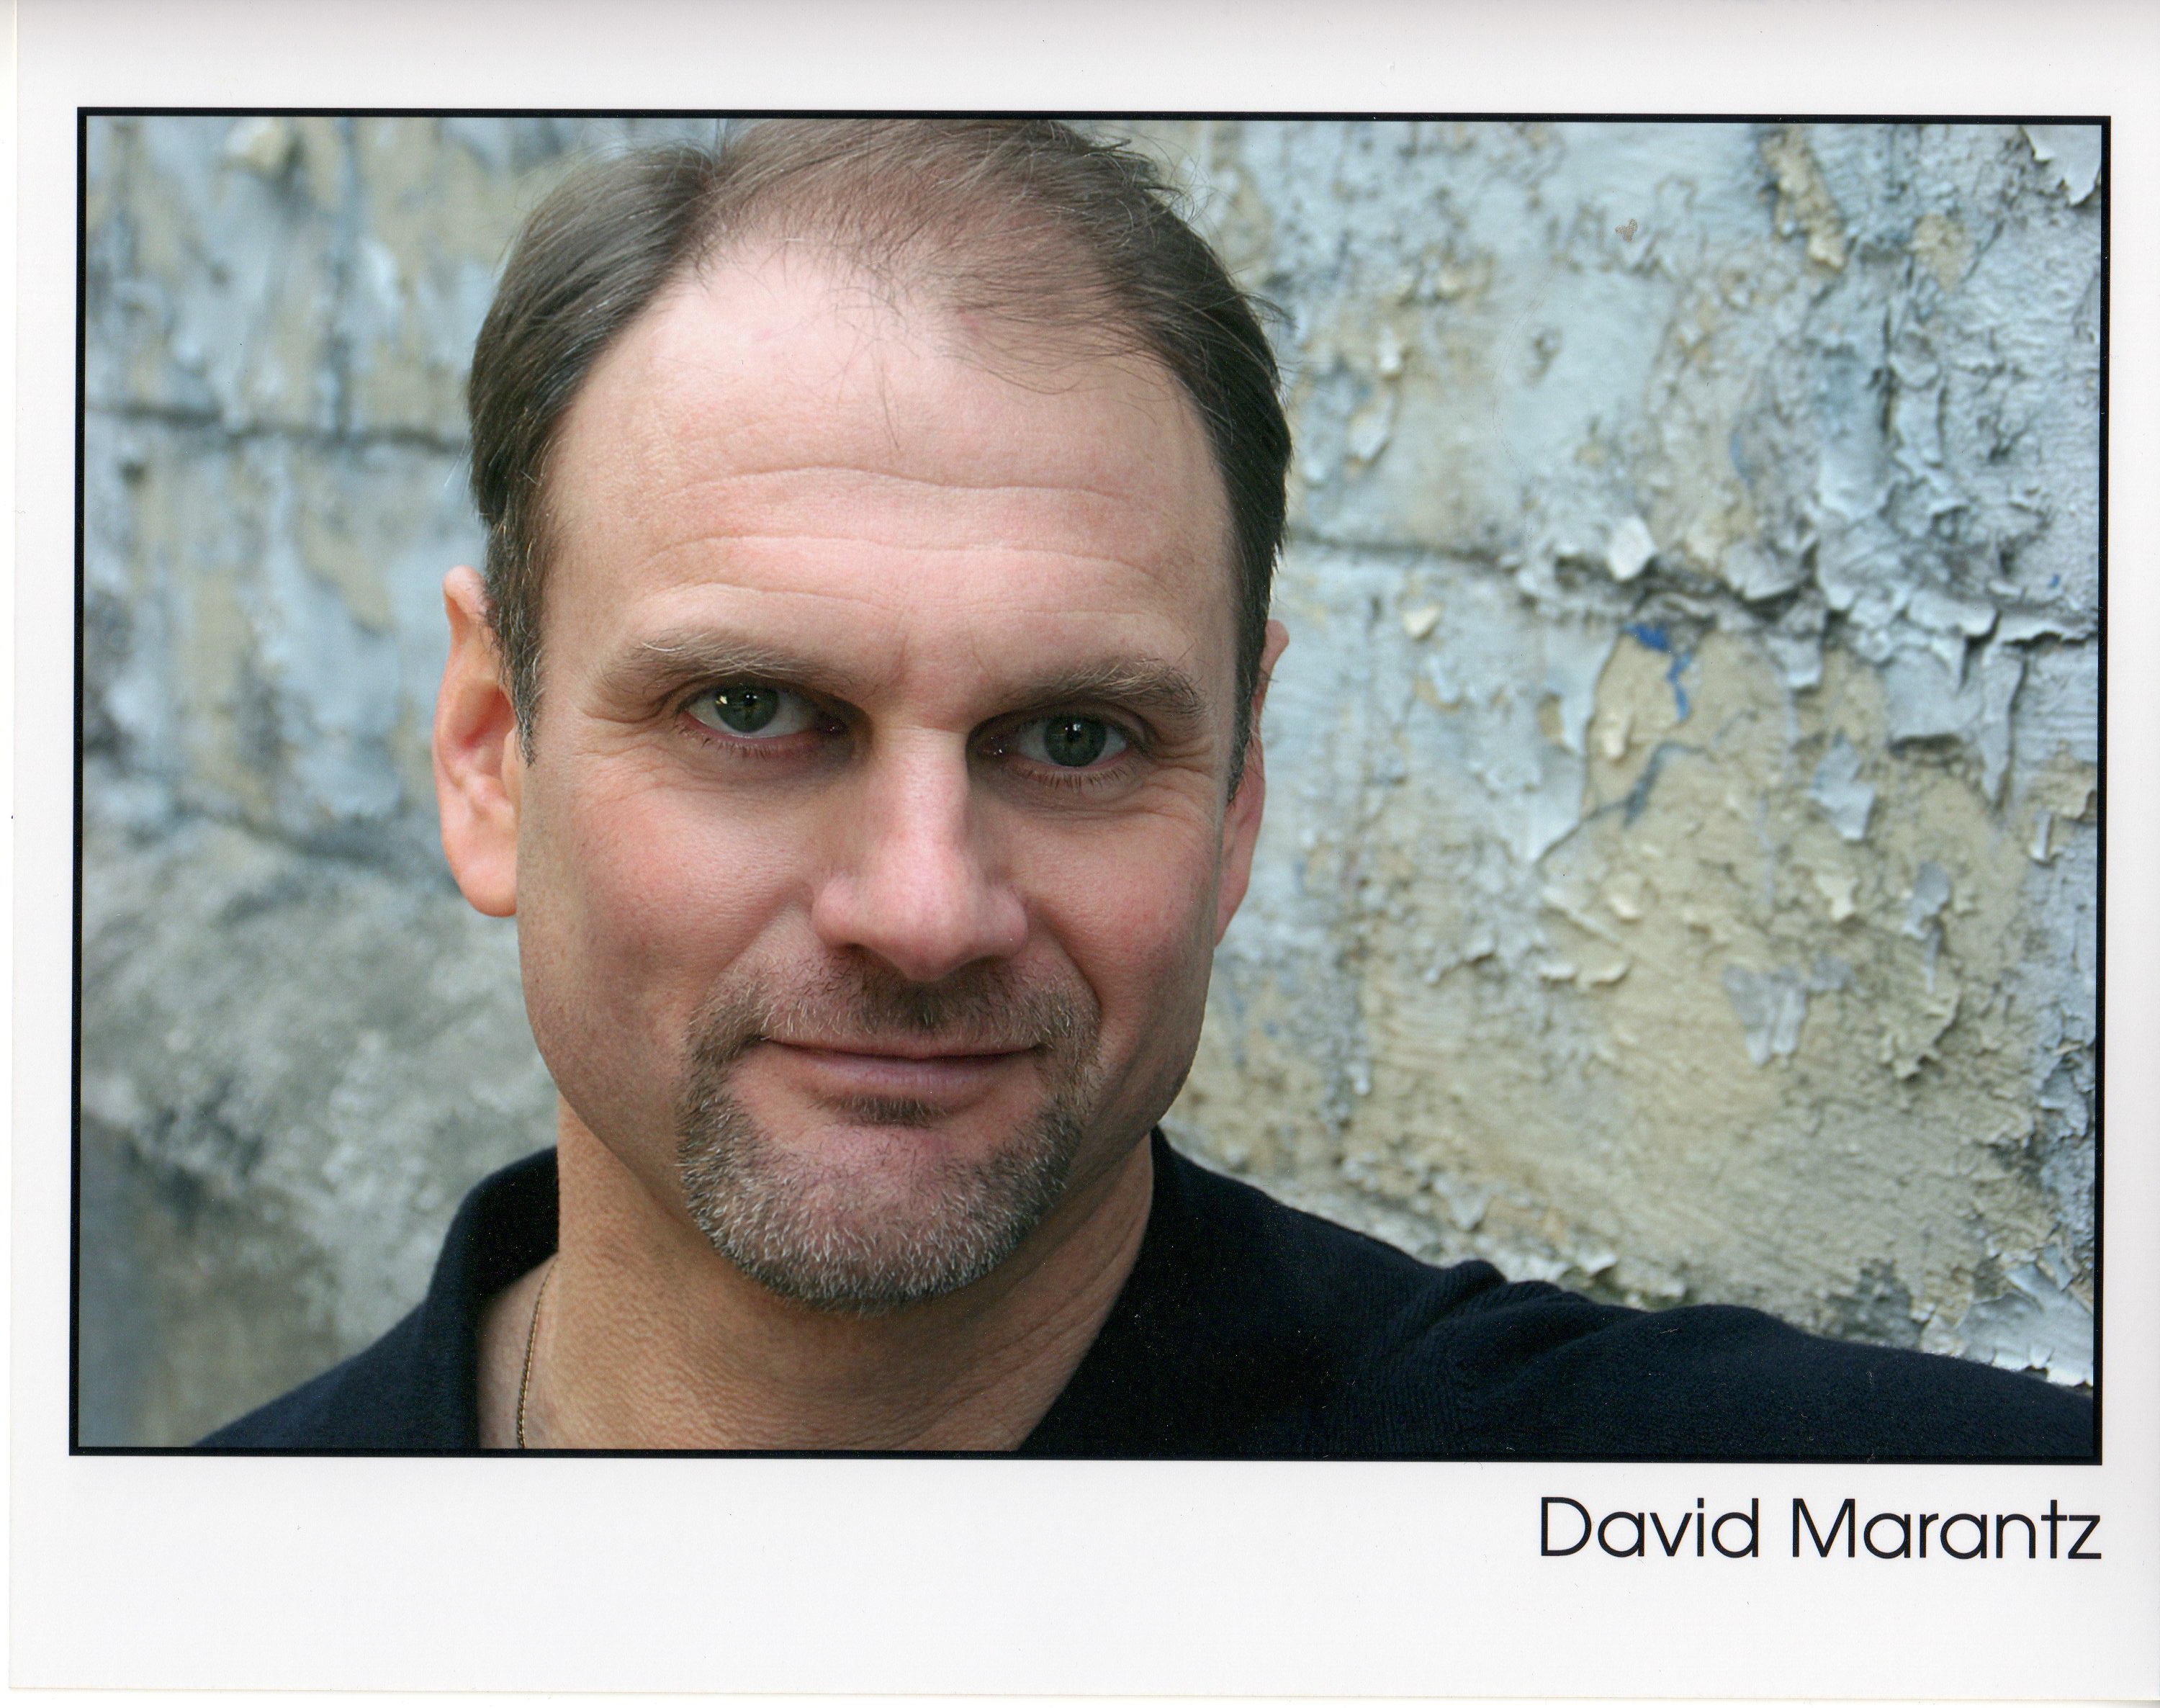 David Marantz